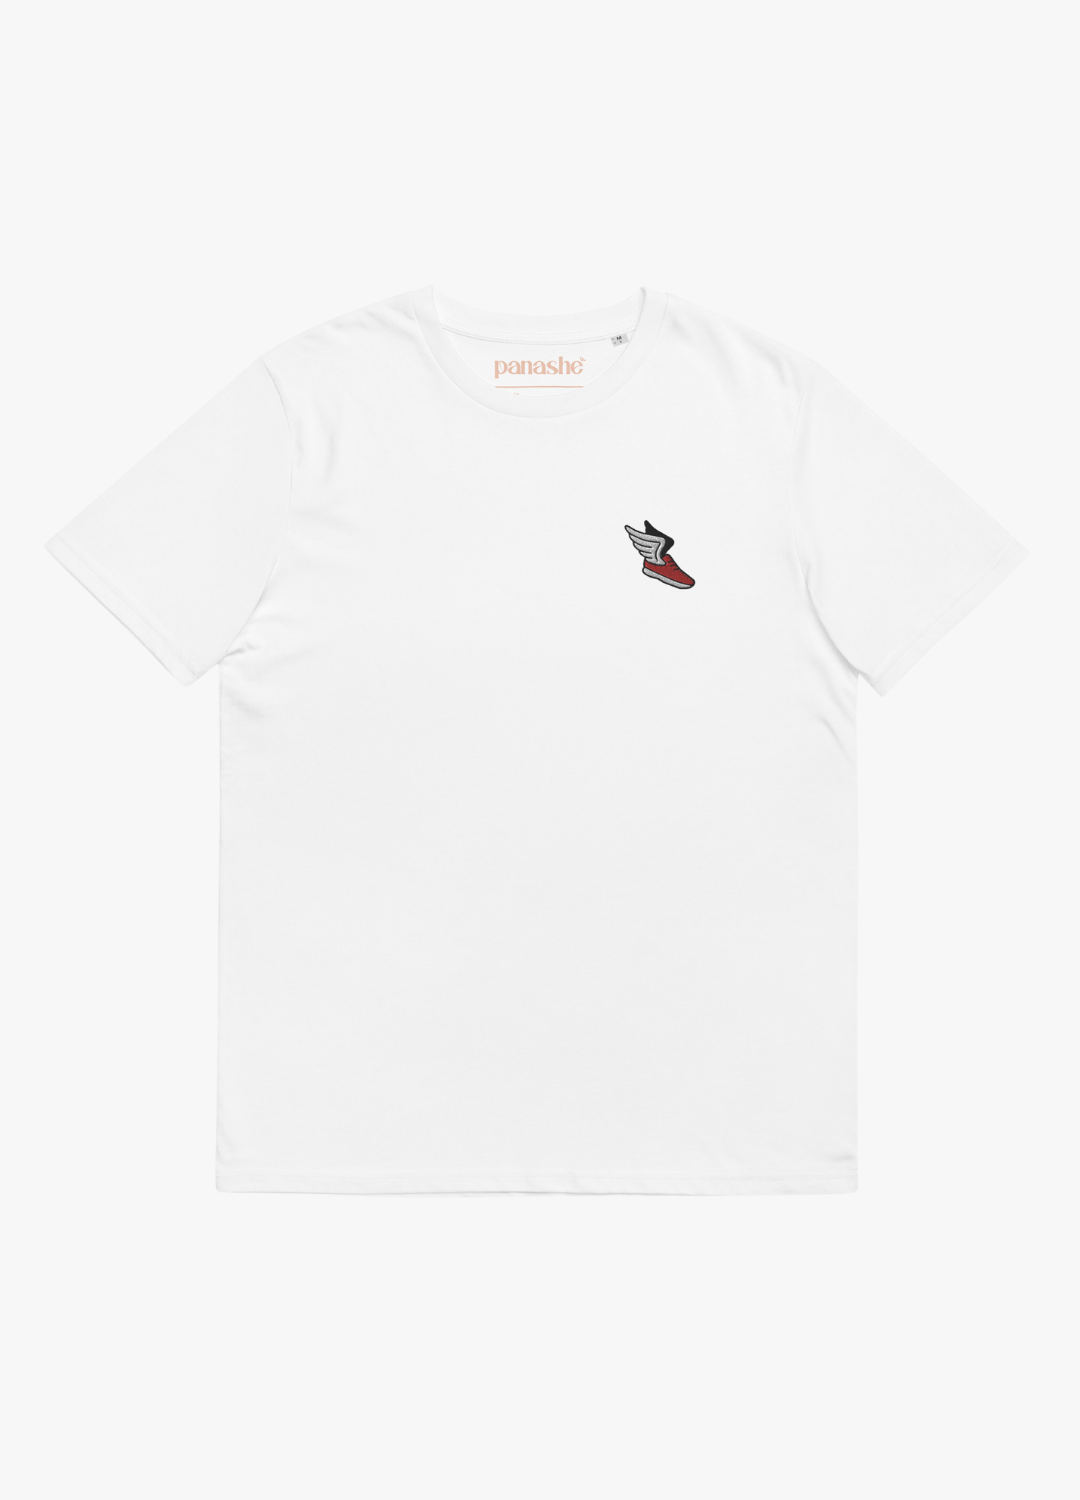 tshirt en coton écologique et vegan blanc unisexe avec broderie chaussure ailée rouge et phrase drôle dans le dos 